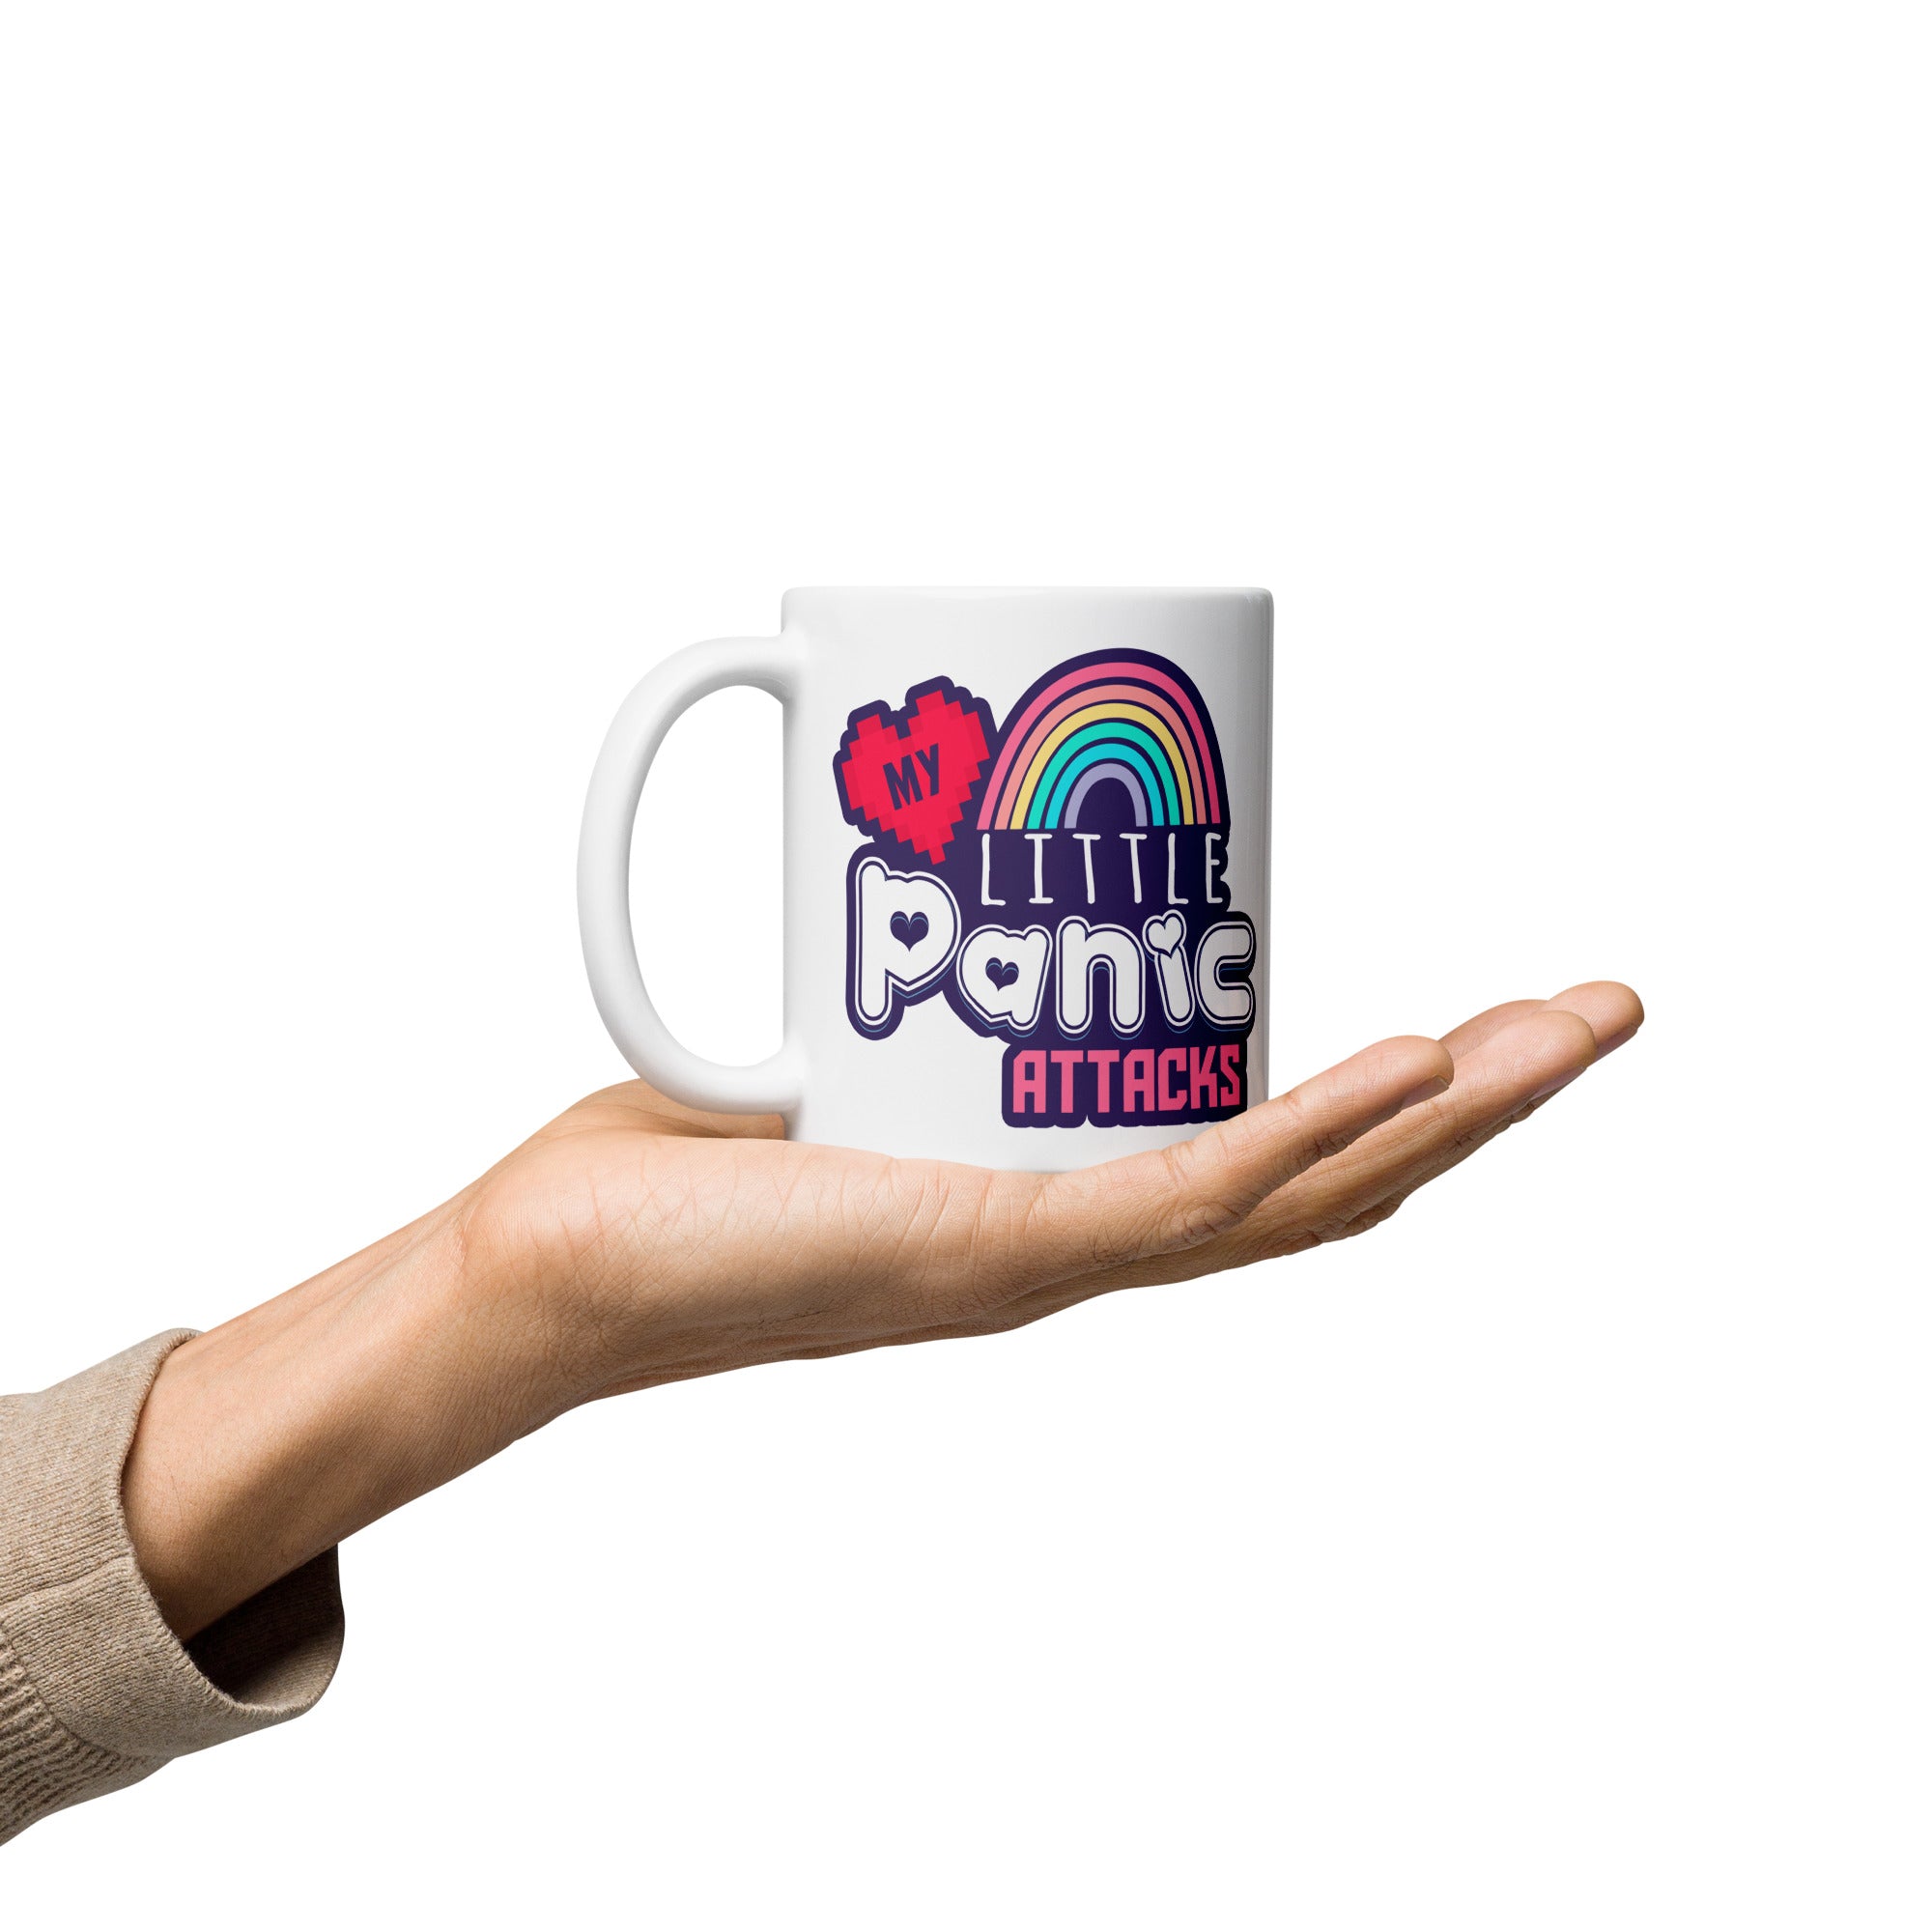 My Little Panic Attacks - White Glossy Mug